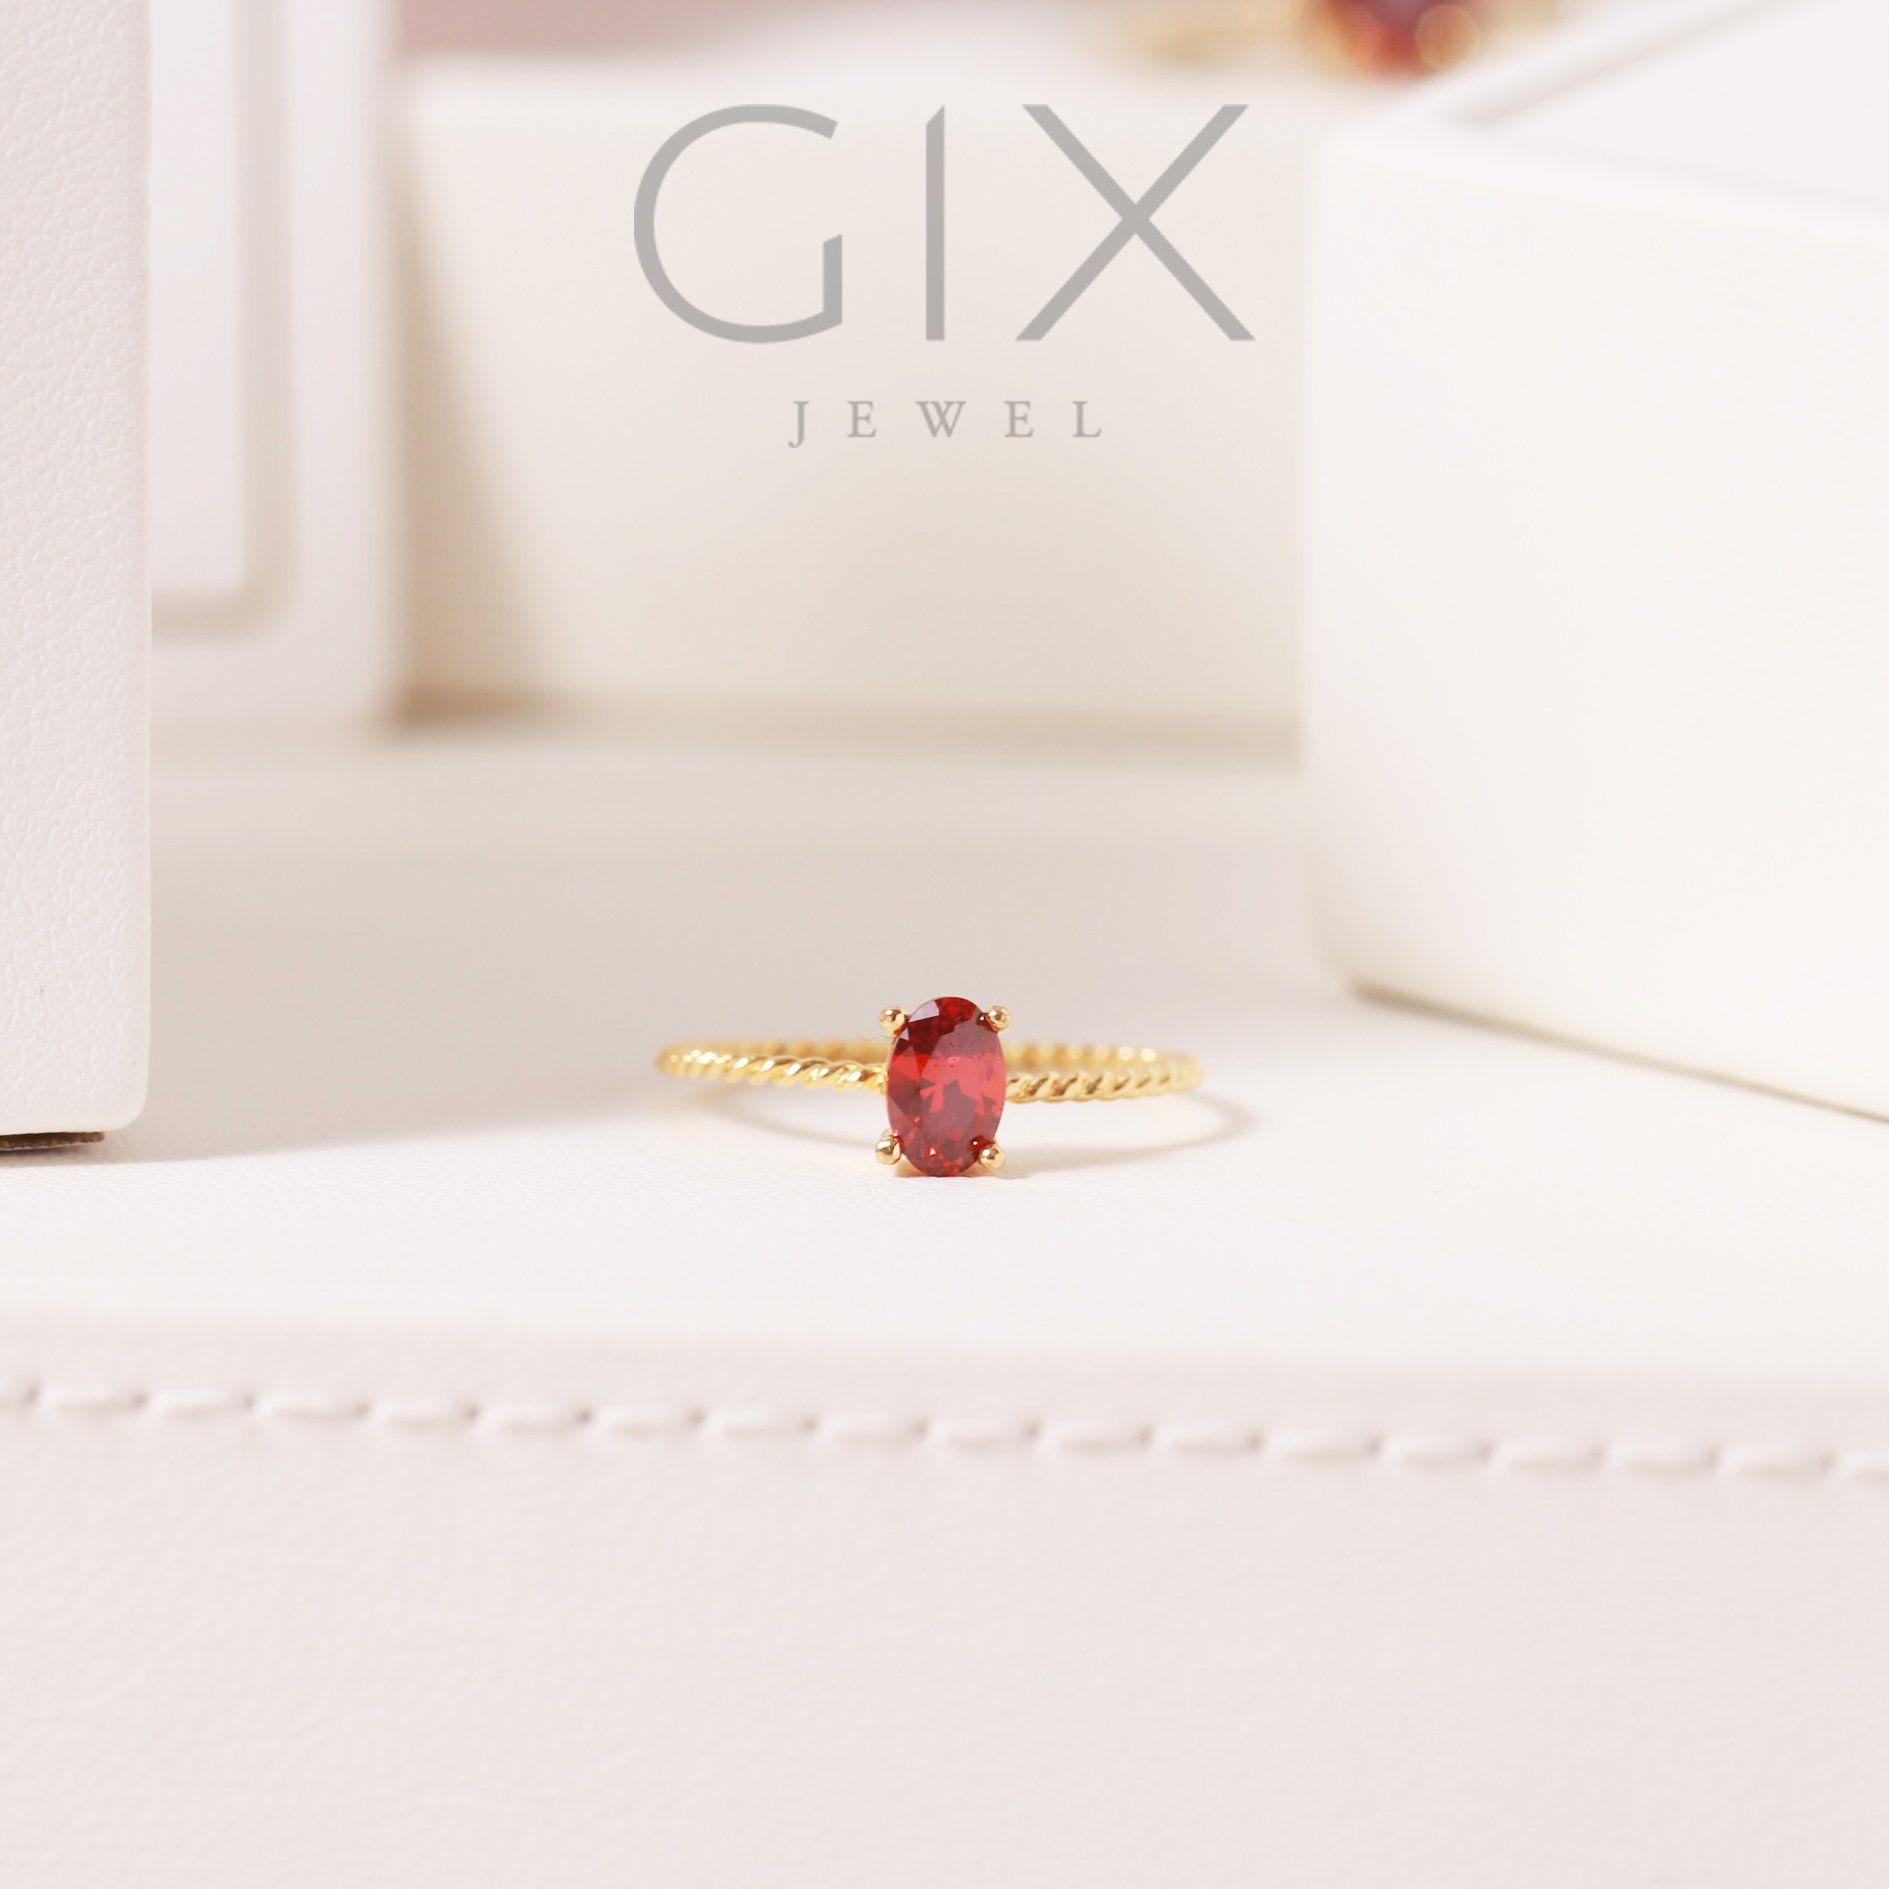  Nhẫn bạc cho nữ mạ vàng đai xoắn đá đỏ đẹp Gix Jewel SPGN15 